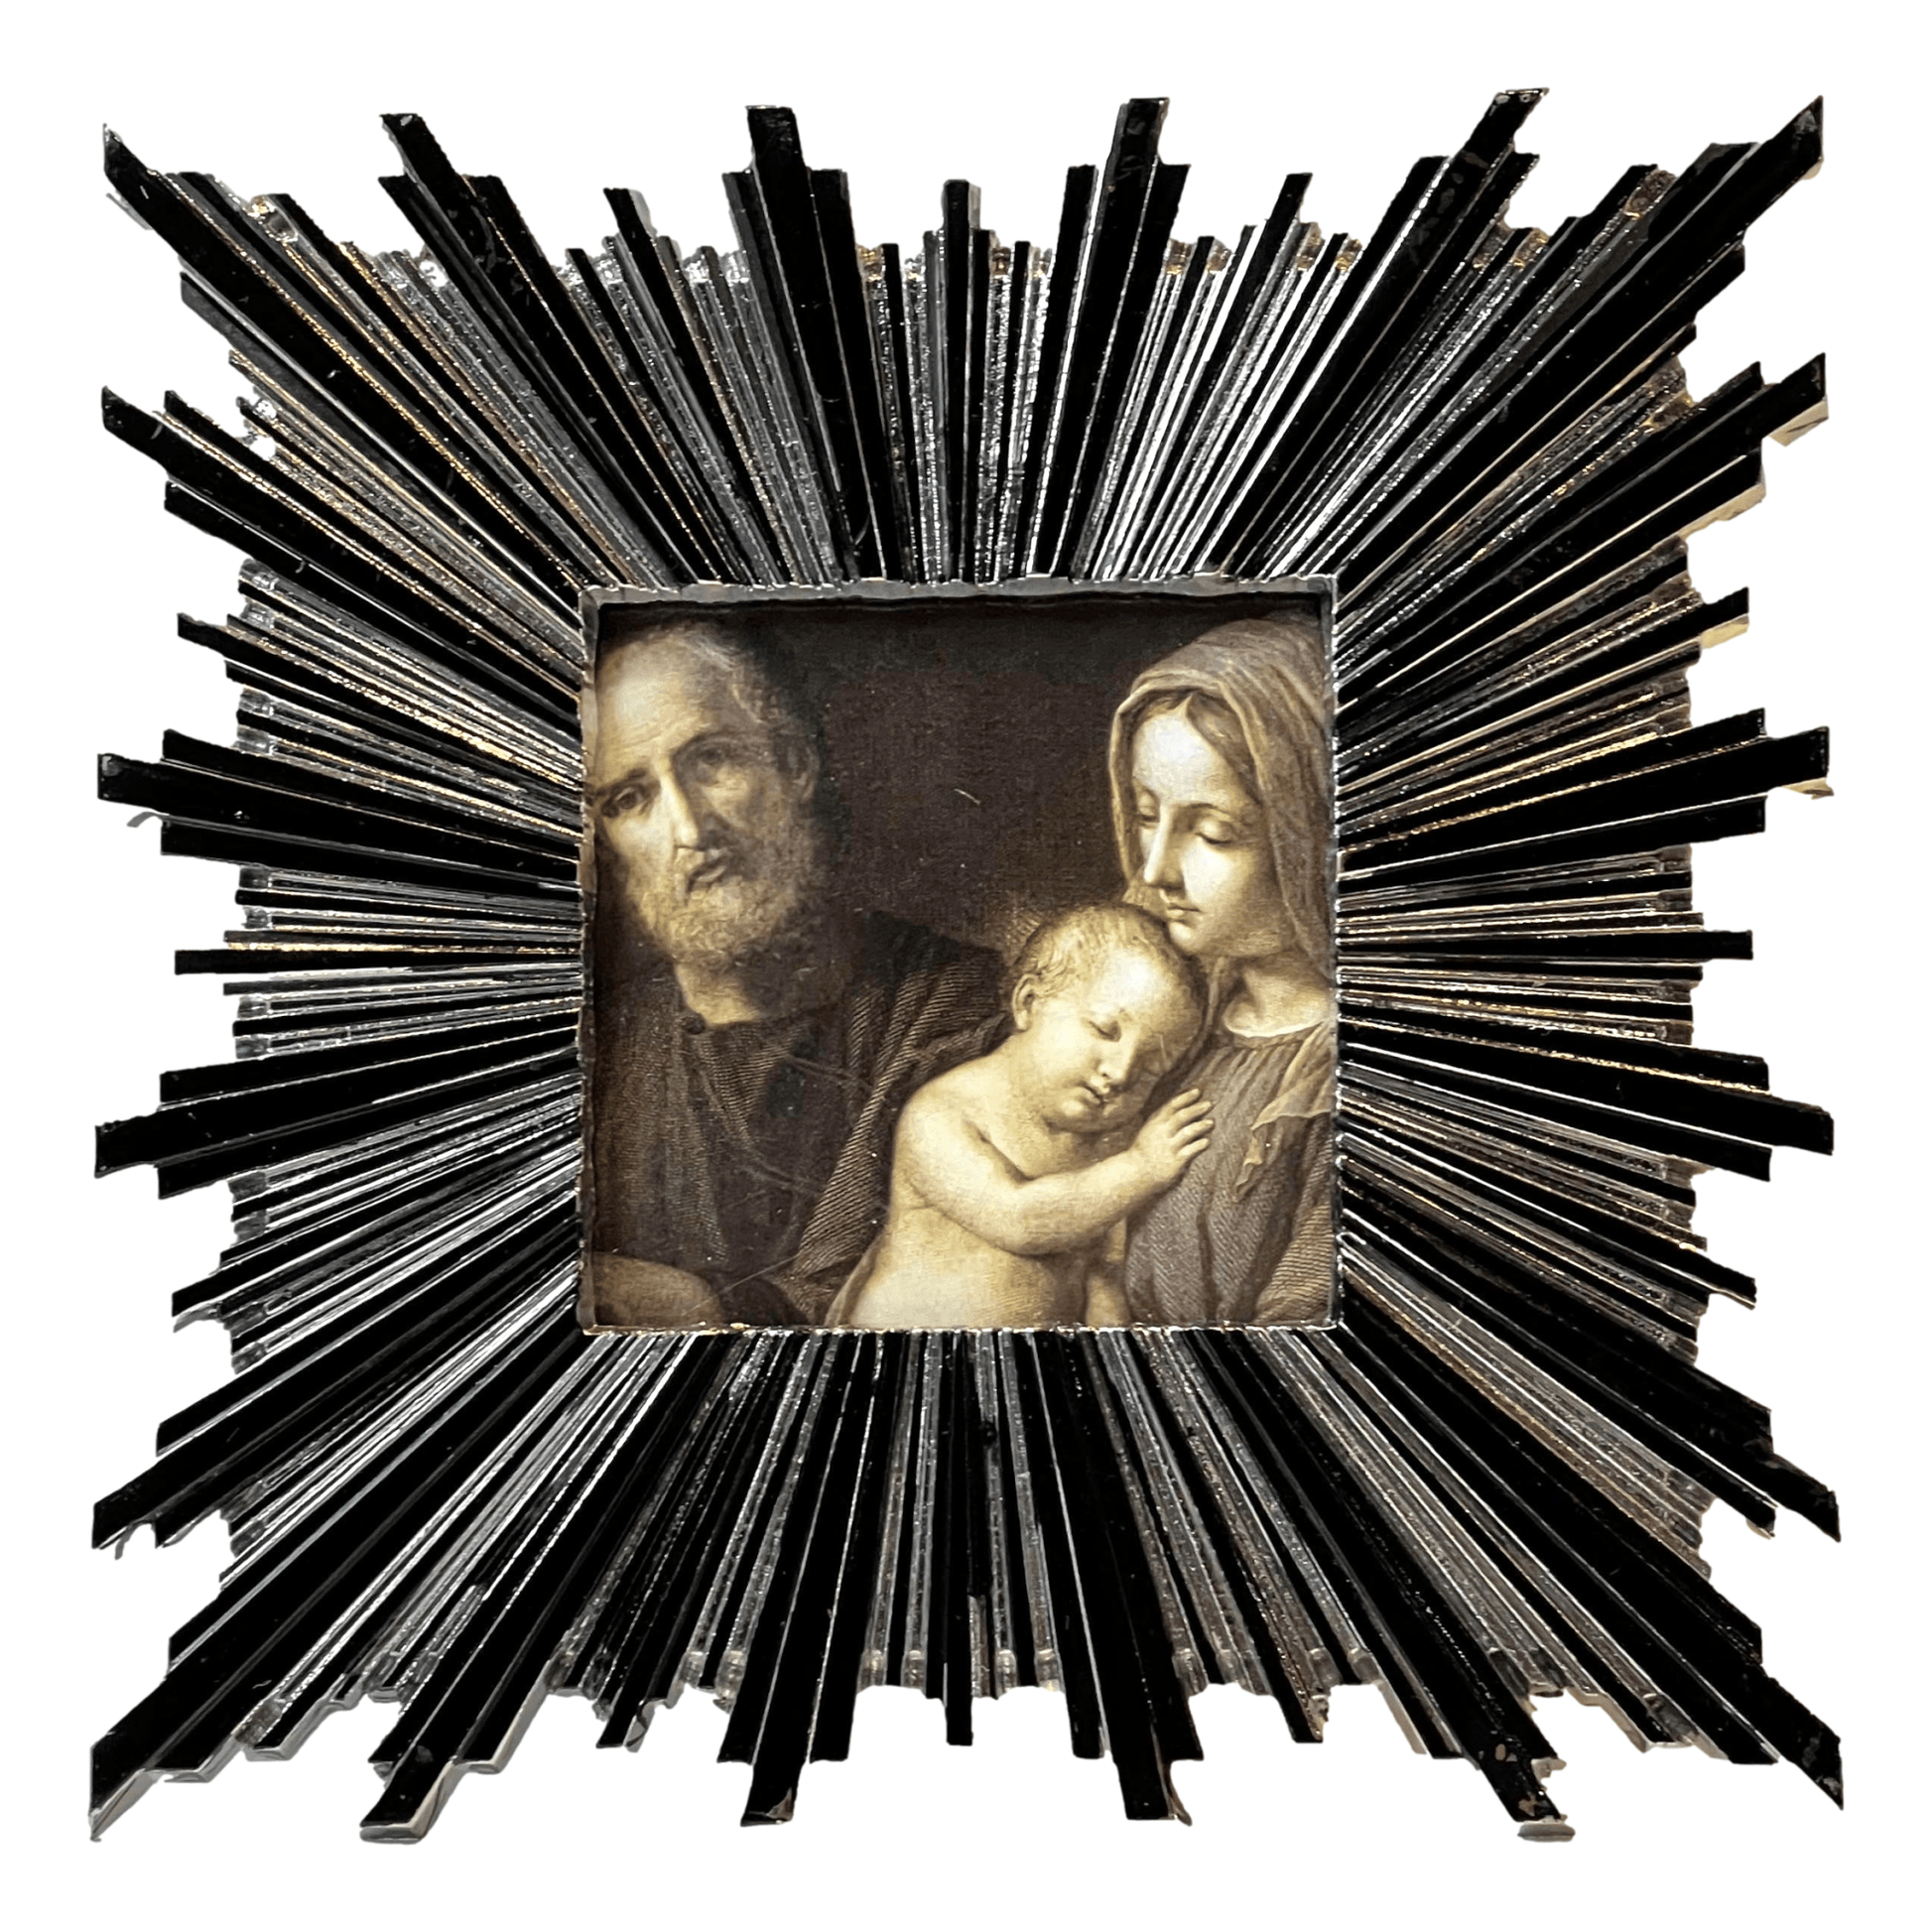 Frame Holy Family